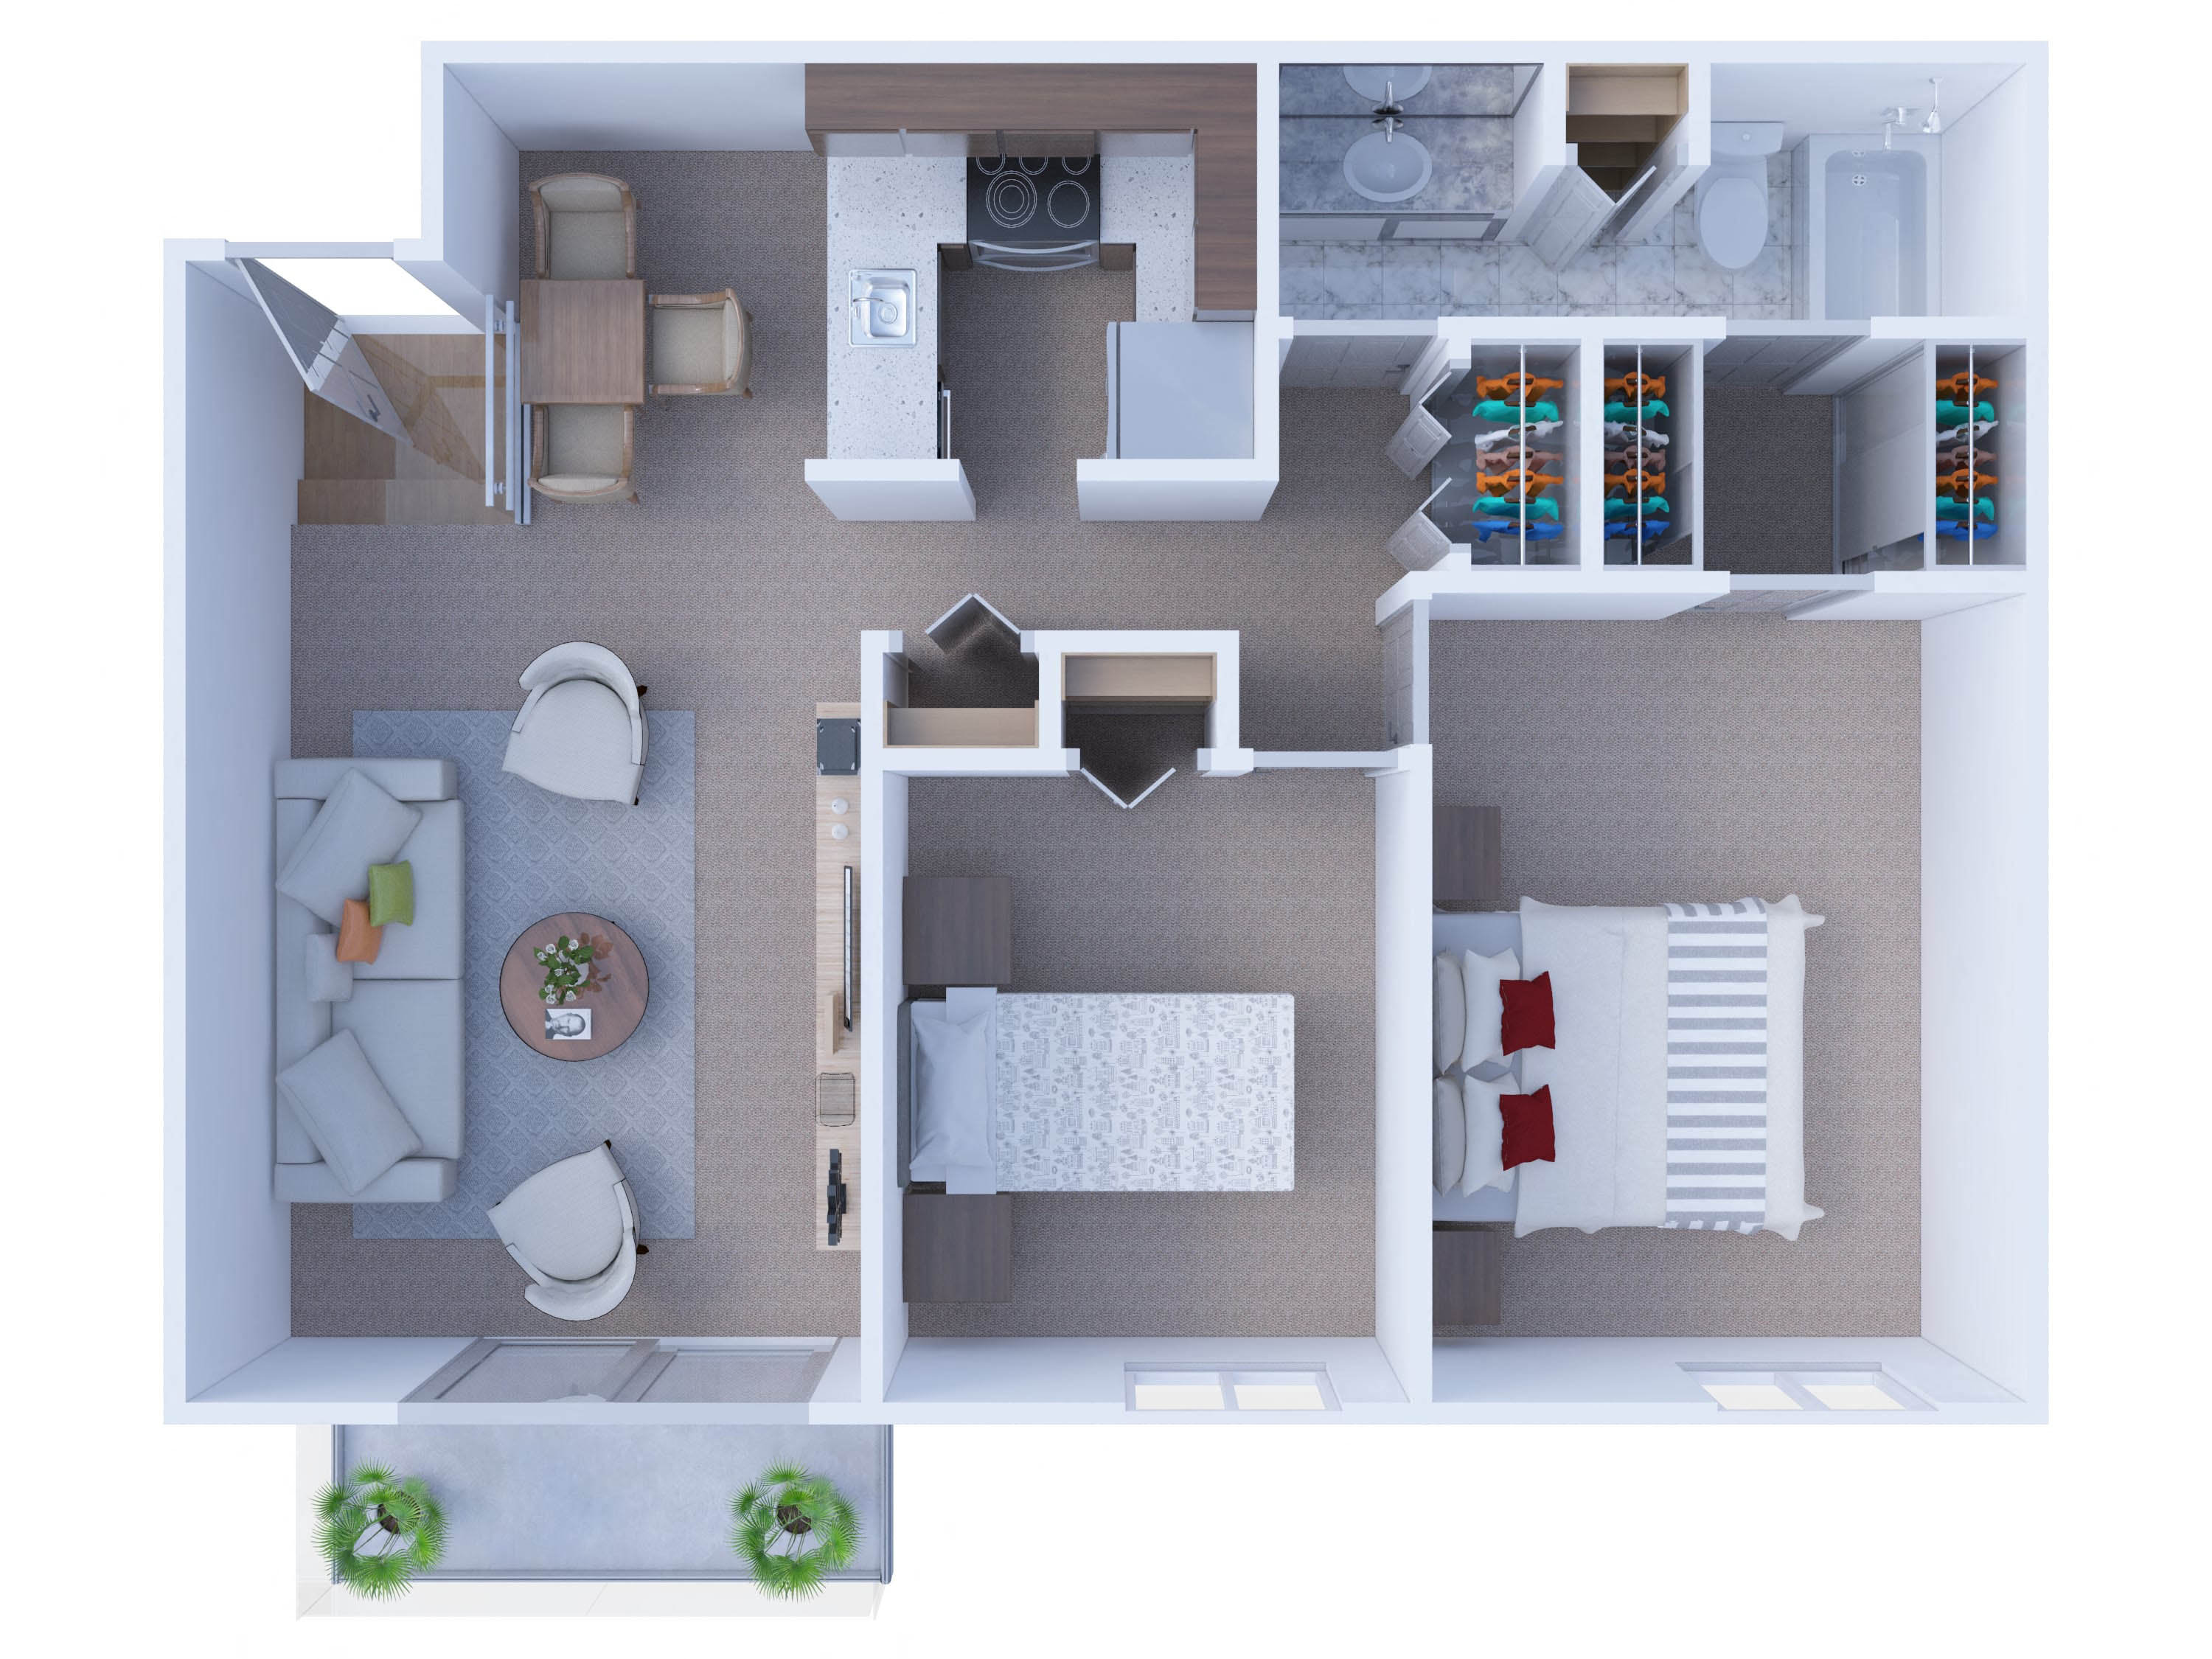 2 Bedrooms Floor Plan B2